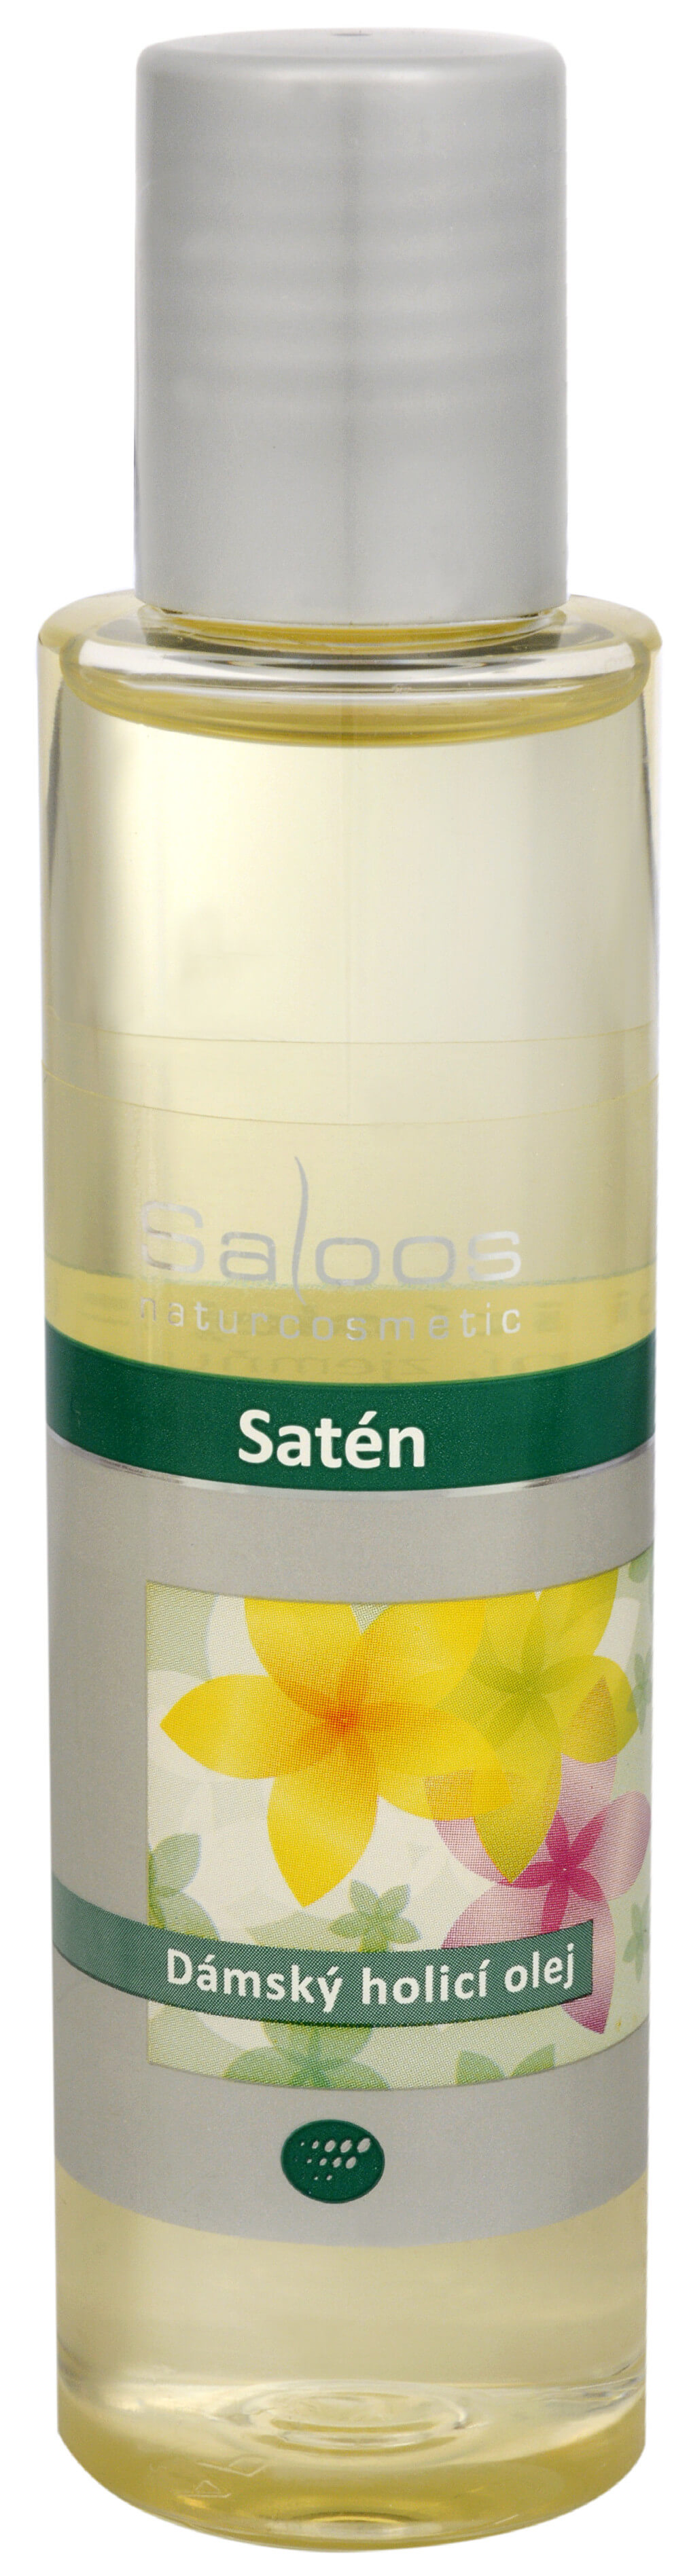 Zobrazit detail výrobku Saloos Satén - dámský holicí olej 125 ml + 2 měsíce na vrácení zboží